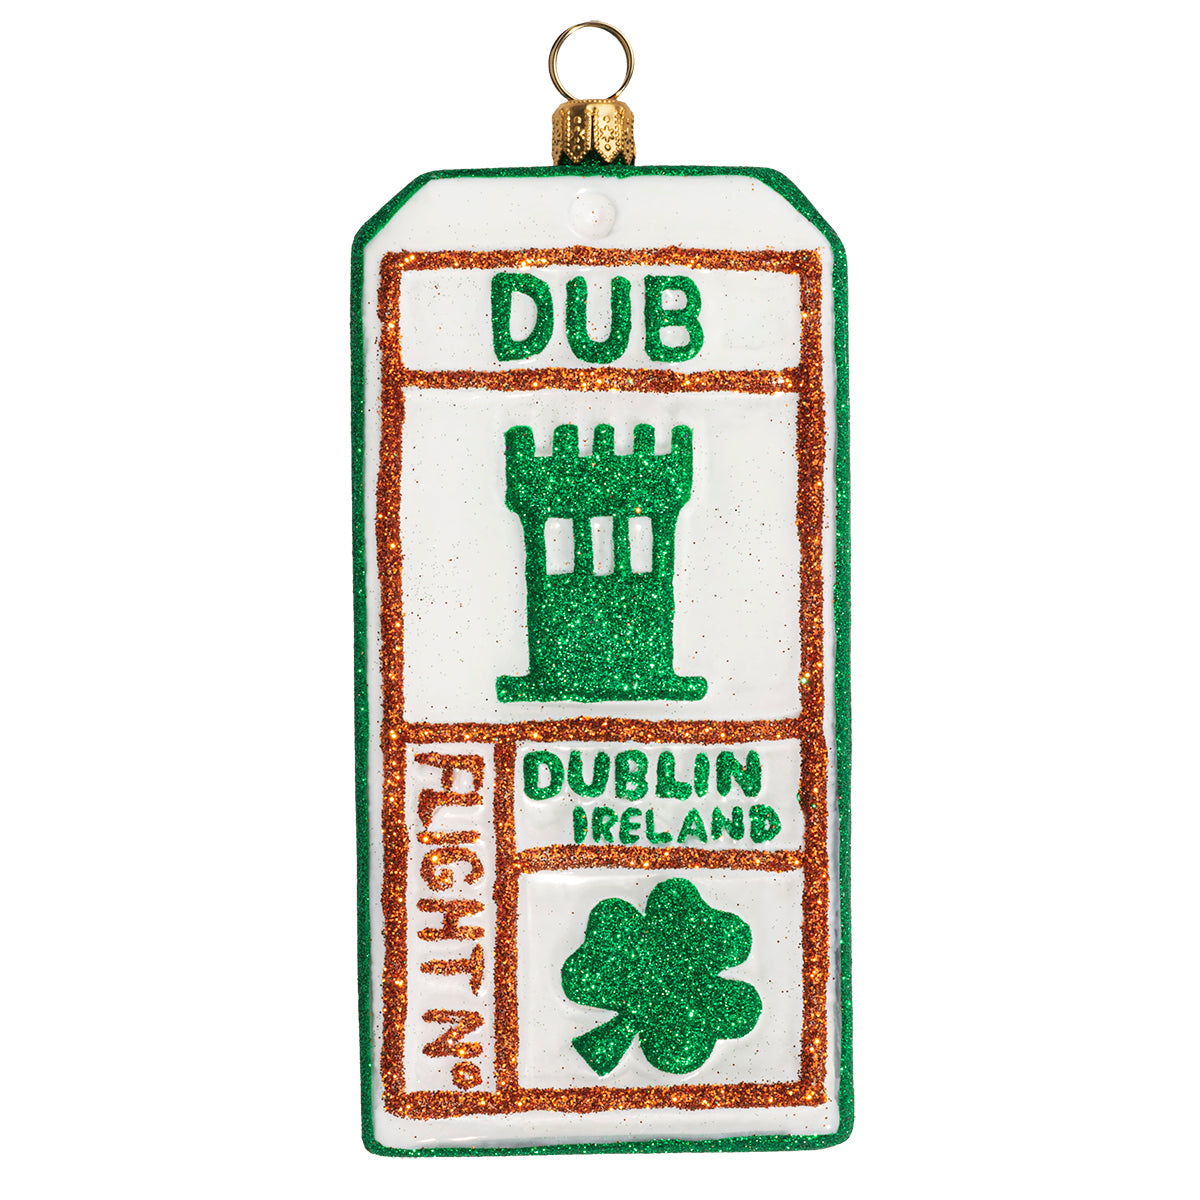 Dublin, Ireland Luggage Tag Ornament